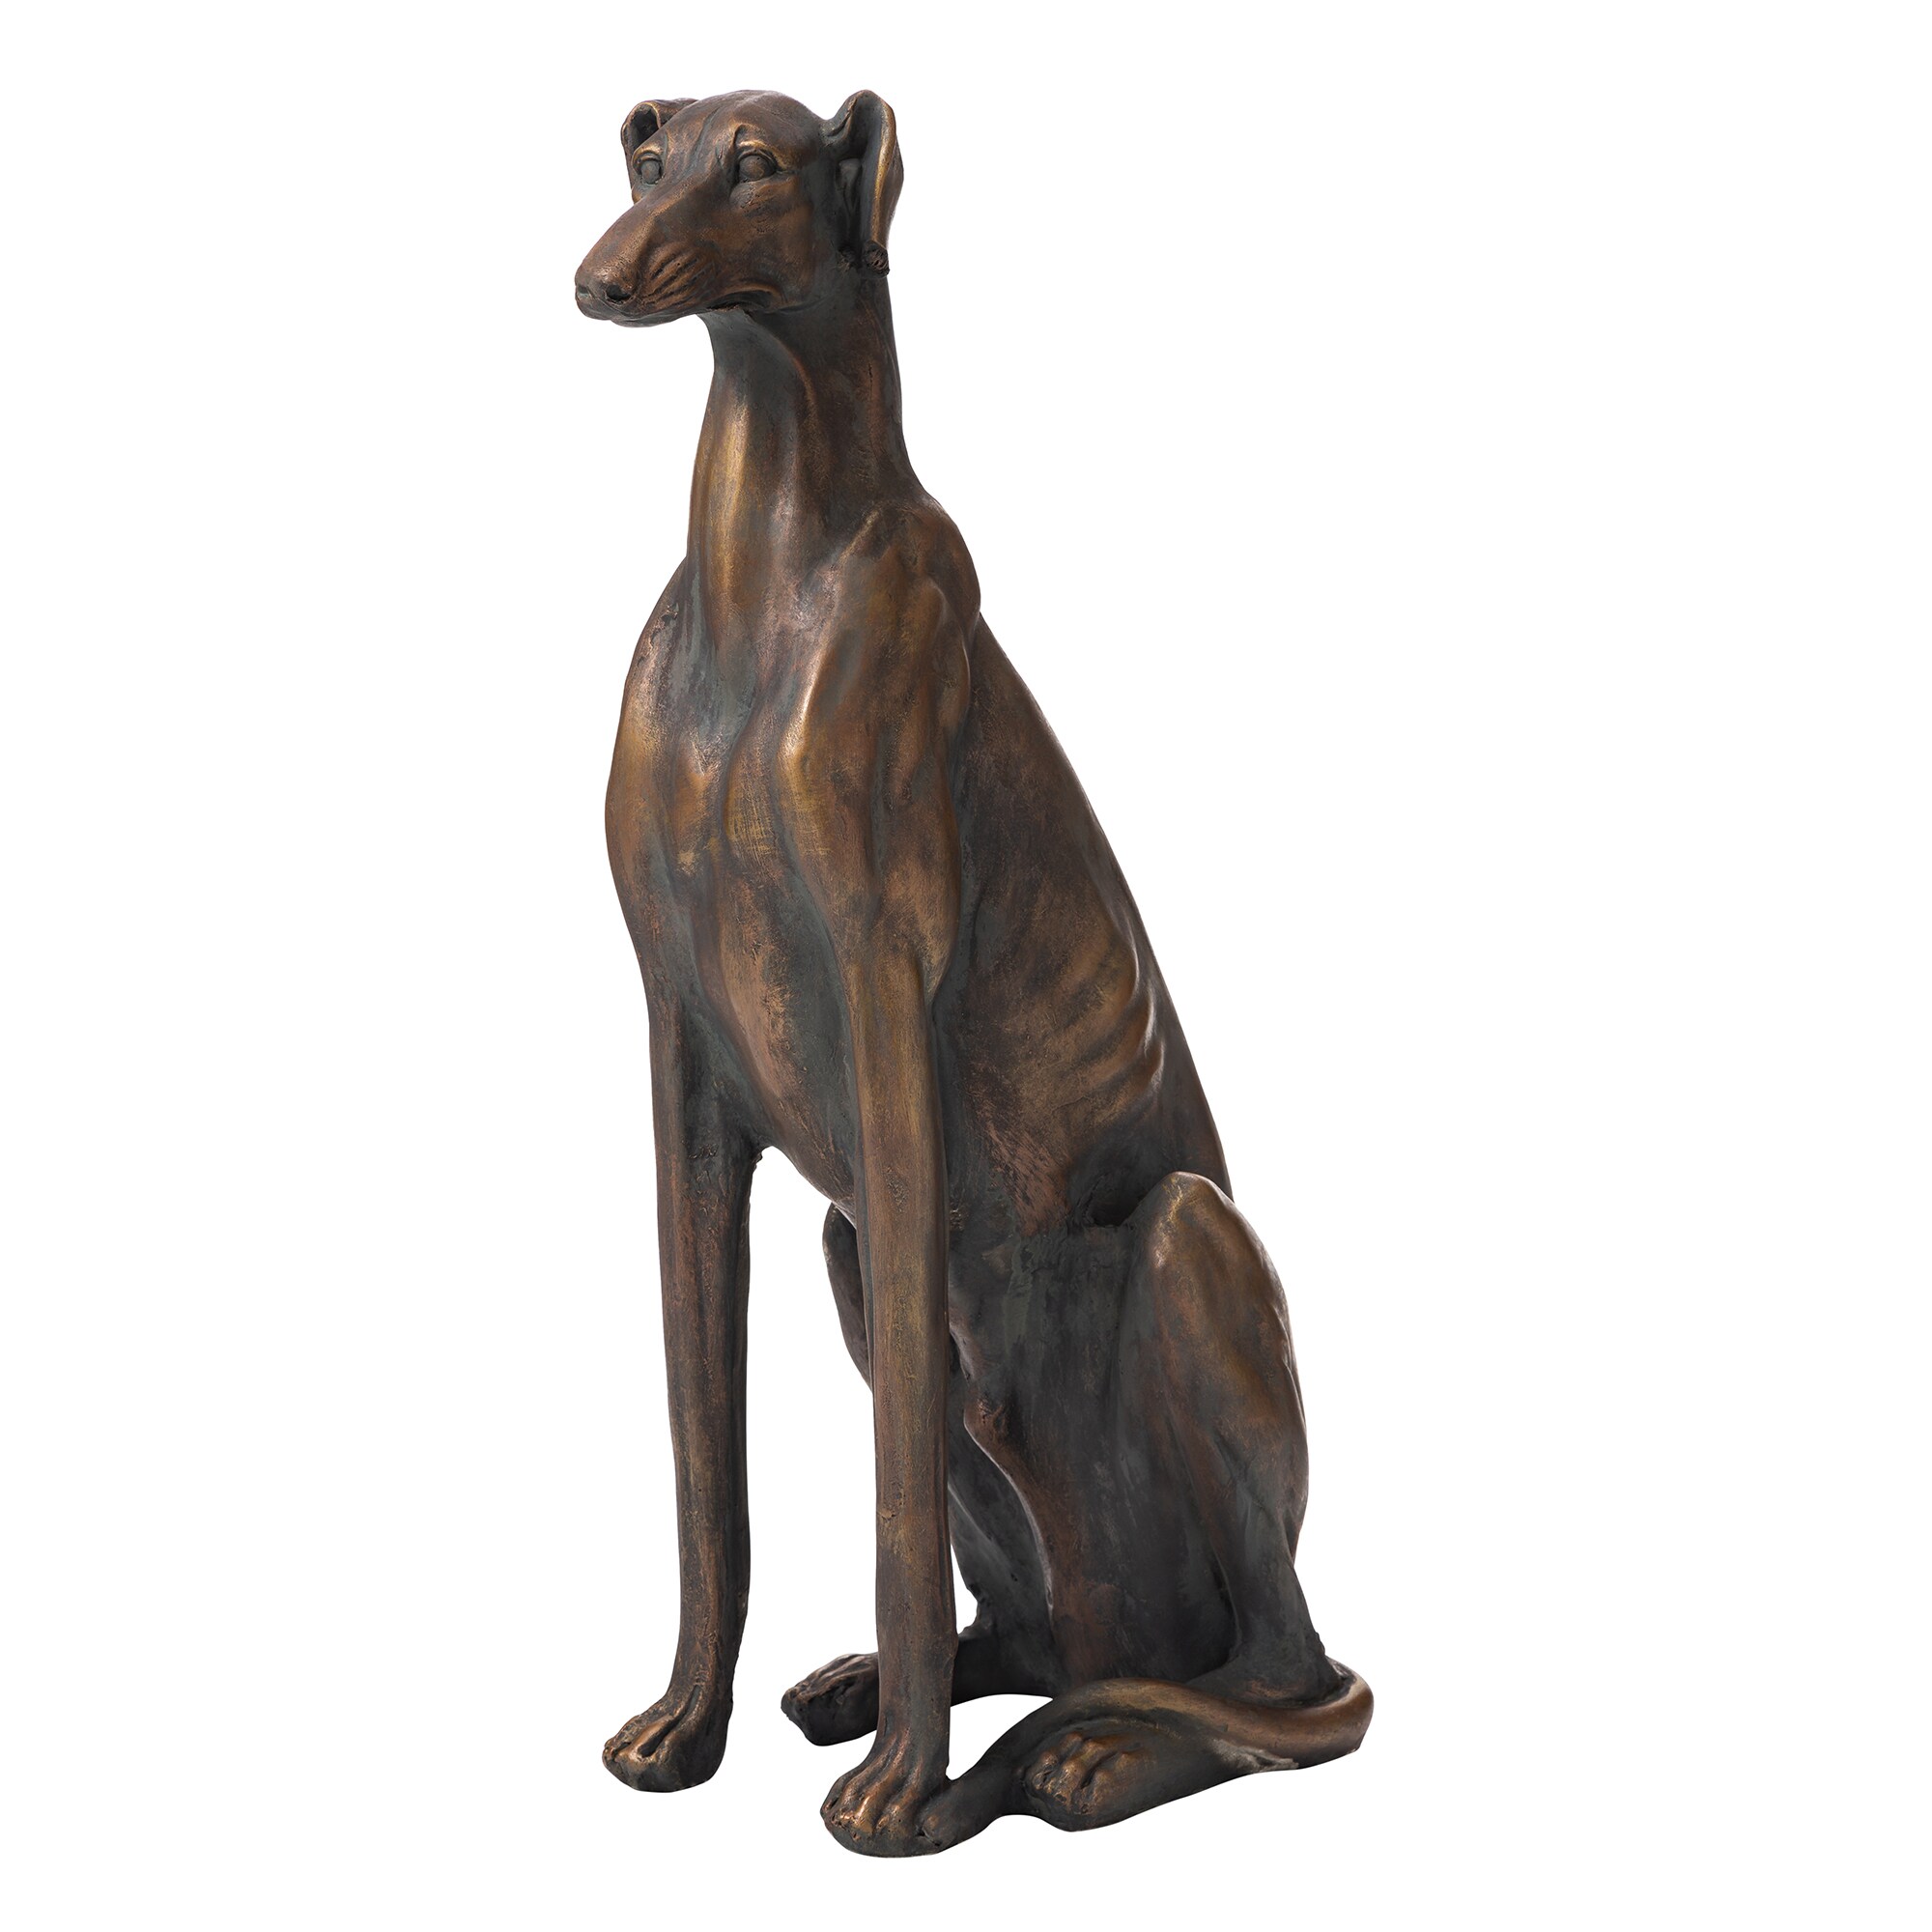 Details about   Glitzhome 30"H MGO Bronze Sitting Greyhound Dog Statue Outdoor Garden Art Decor 